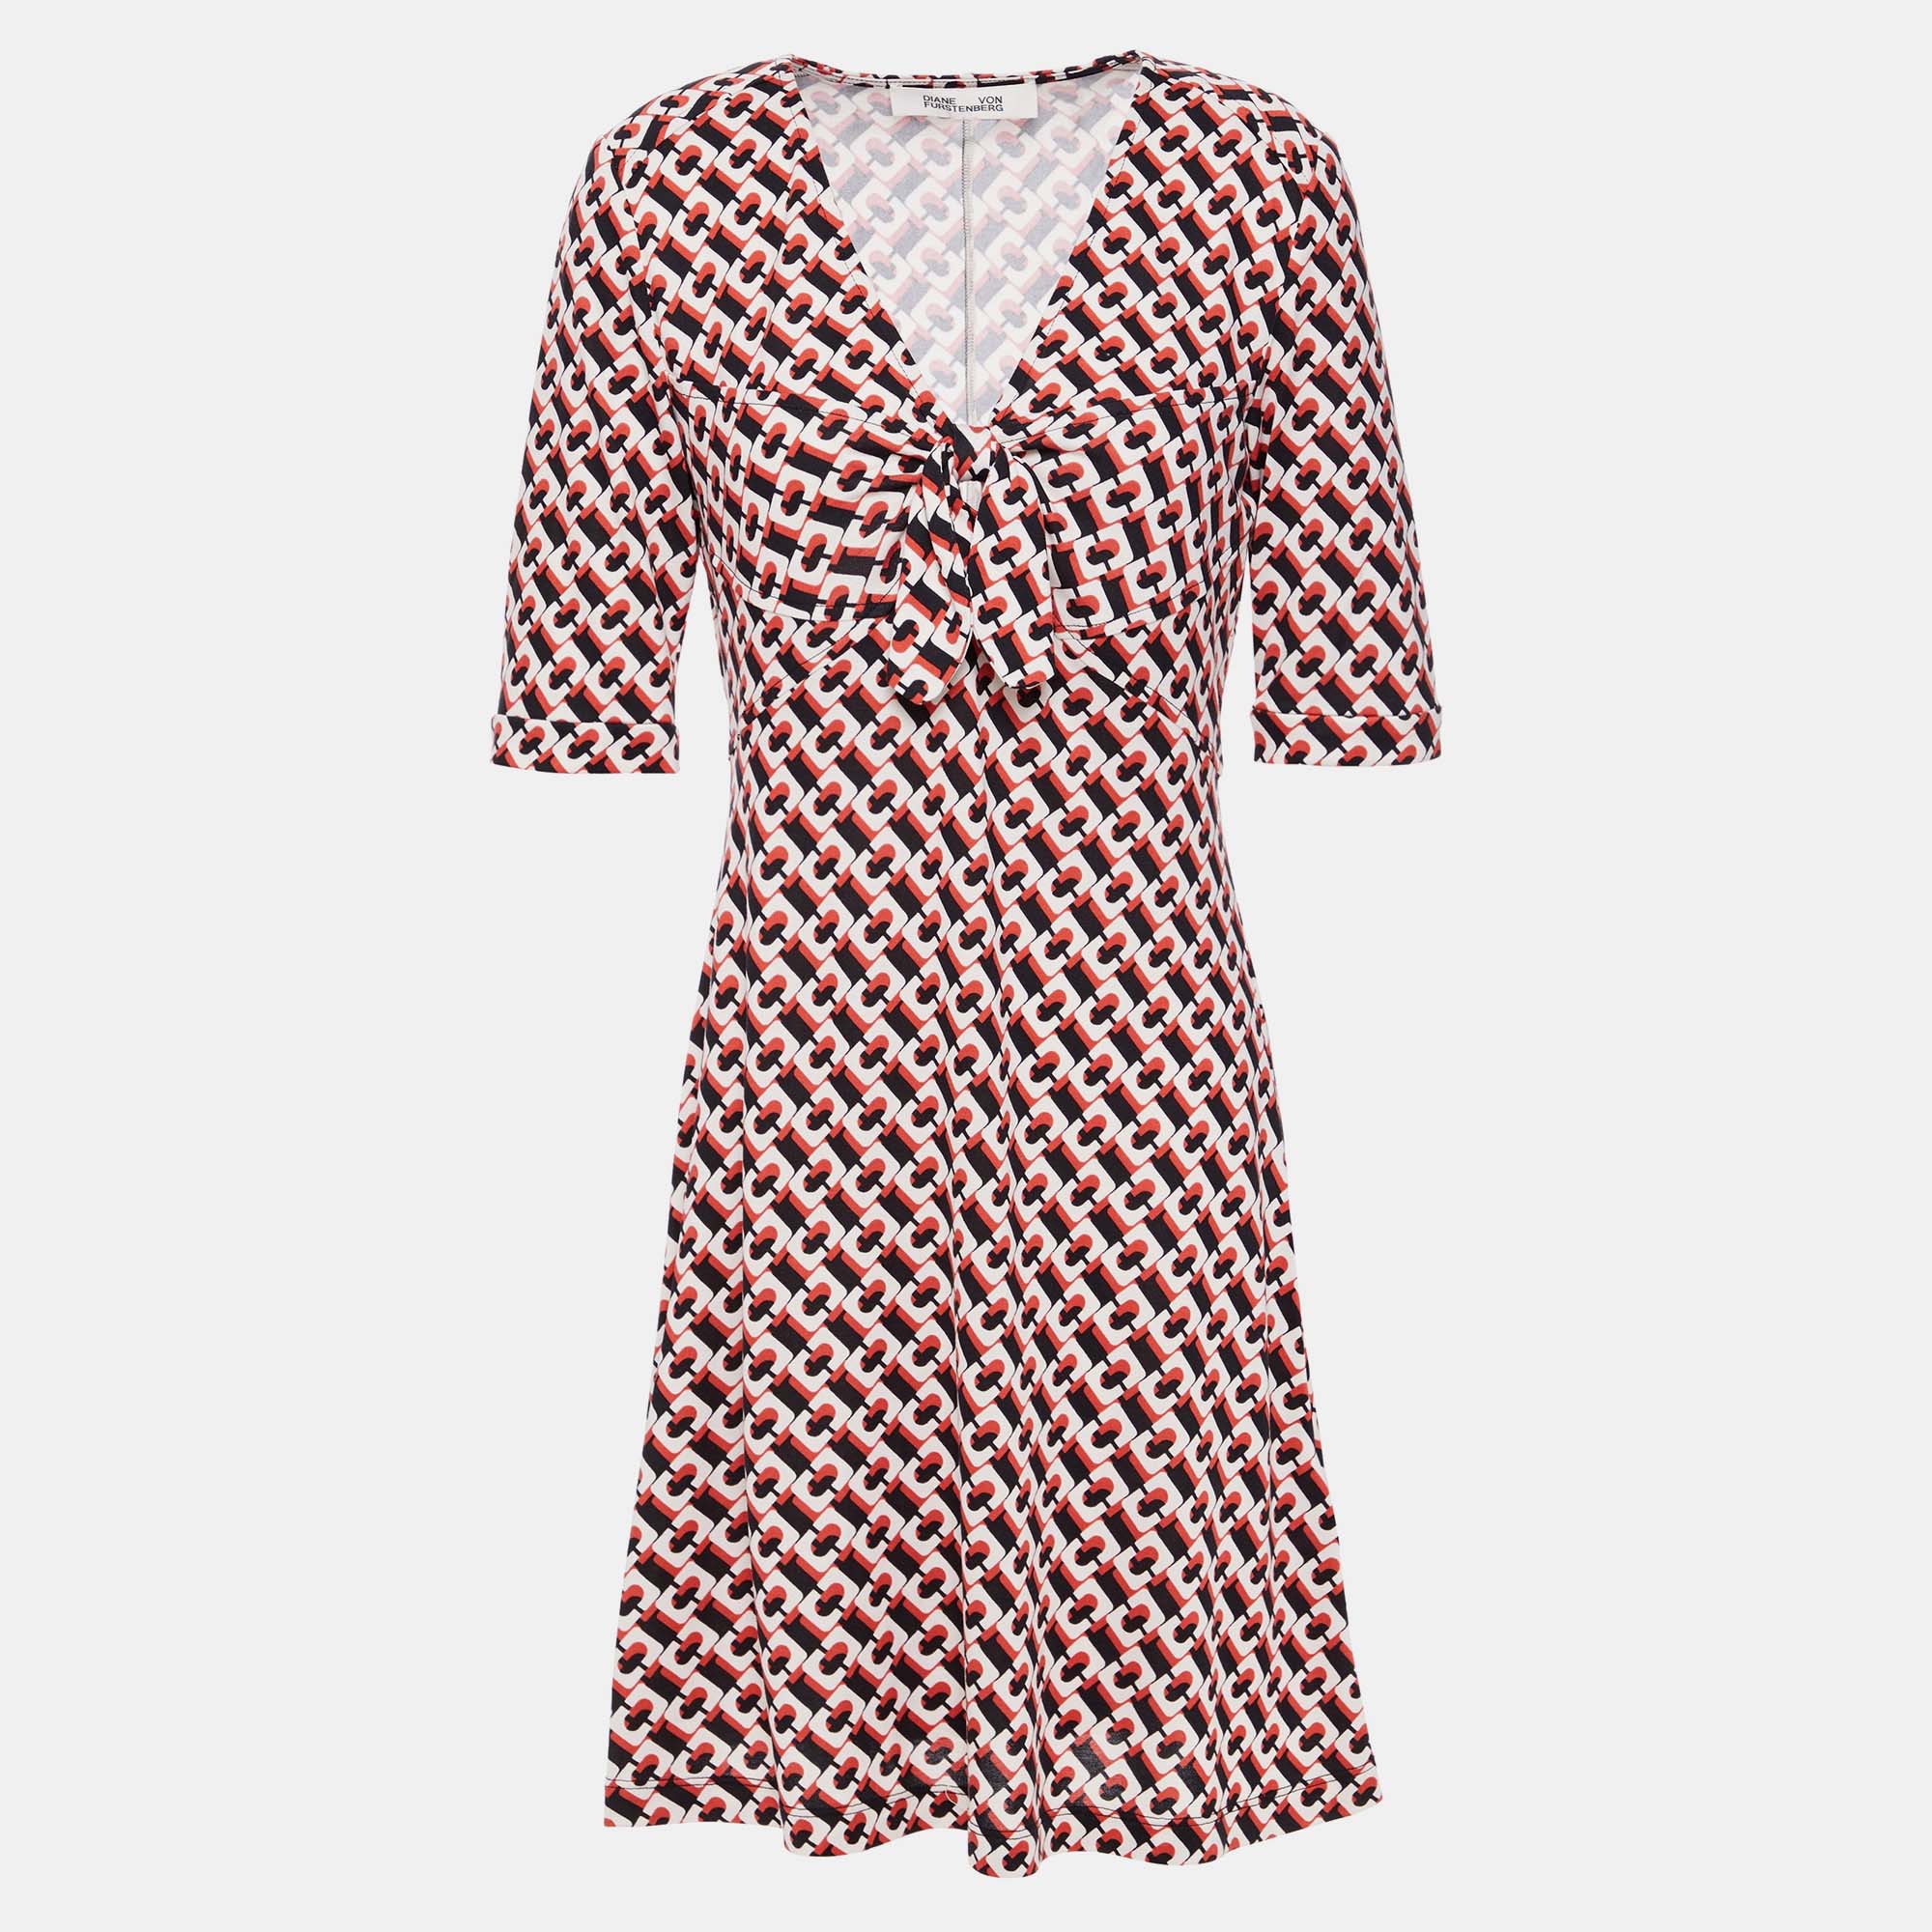 Diane von furstenberg silk mini dress xl